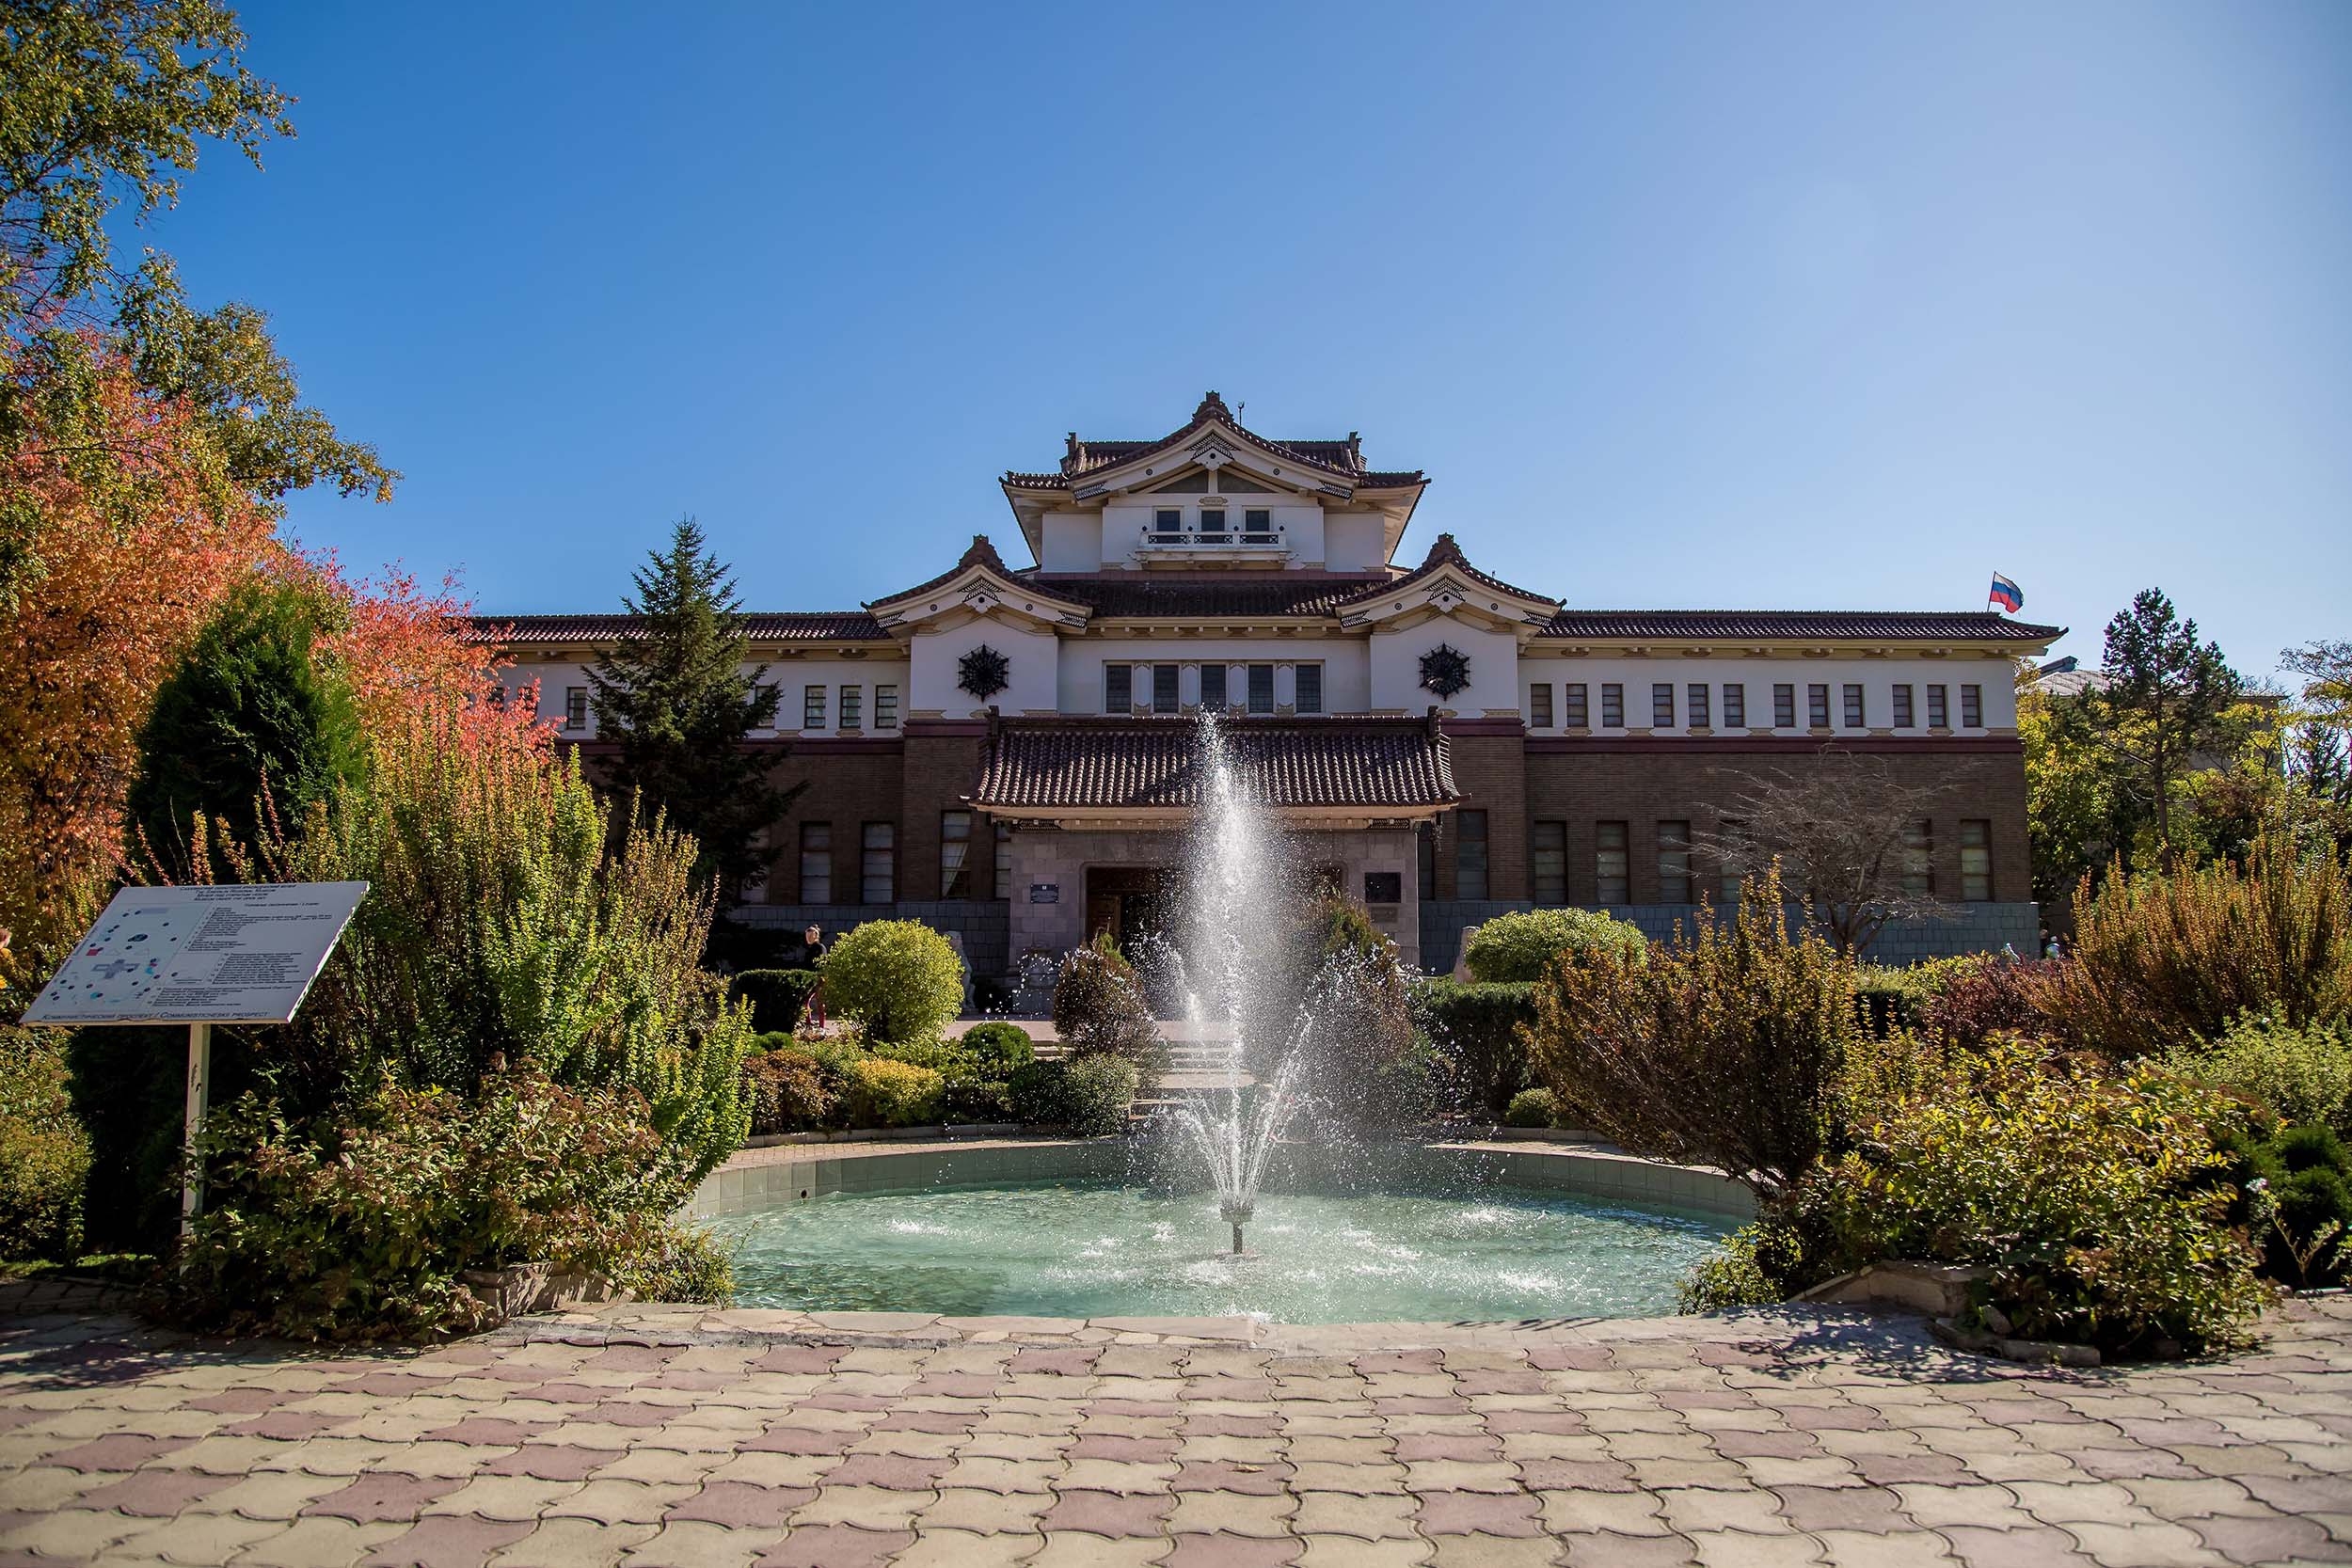 Сахалинский краеведческий музей, построенный в традиционном японском стиле «тэйкан-дзукури» — «императорской короны»